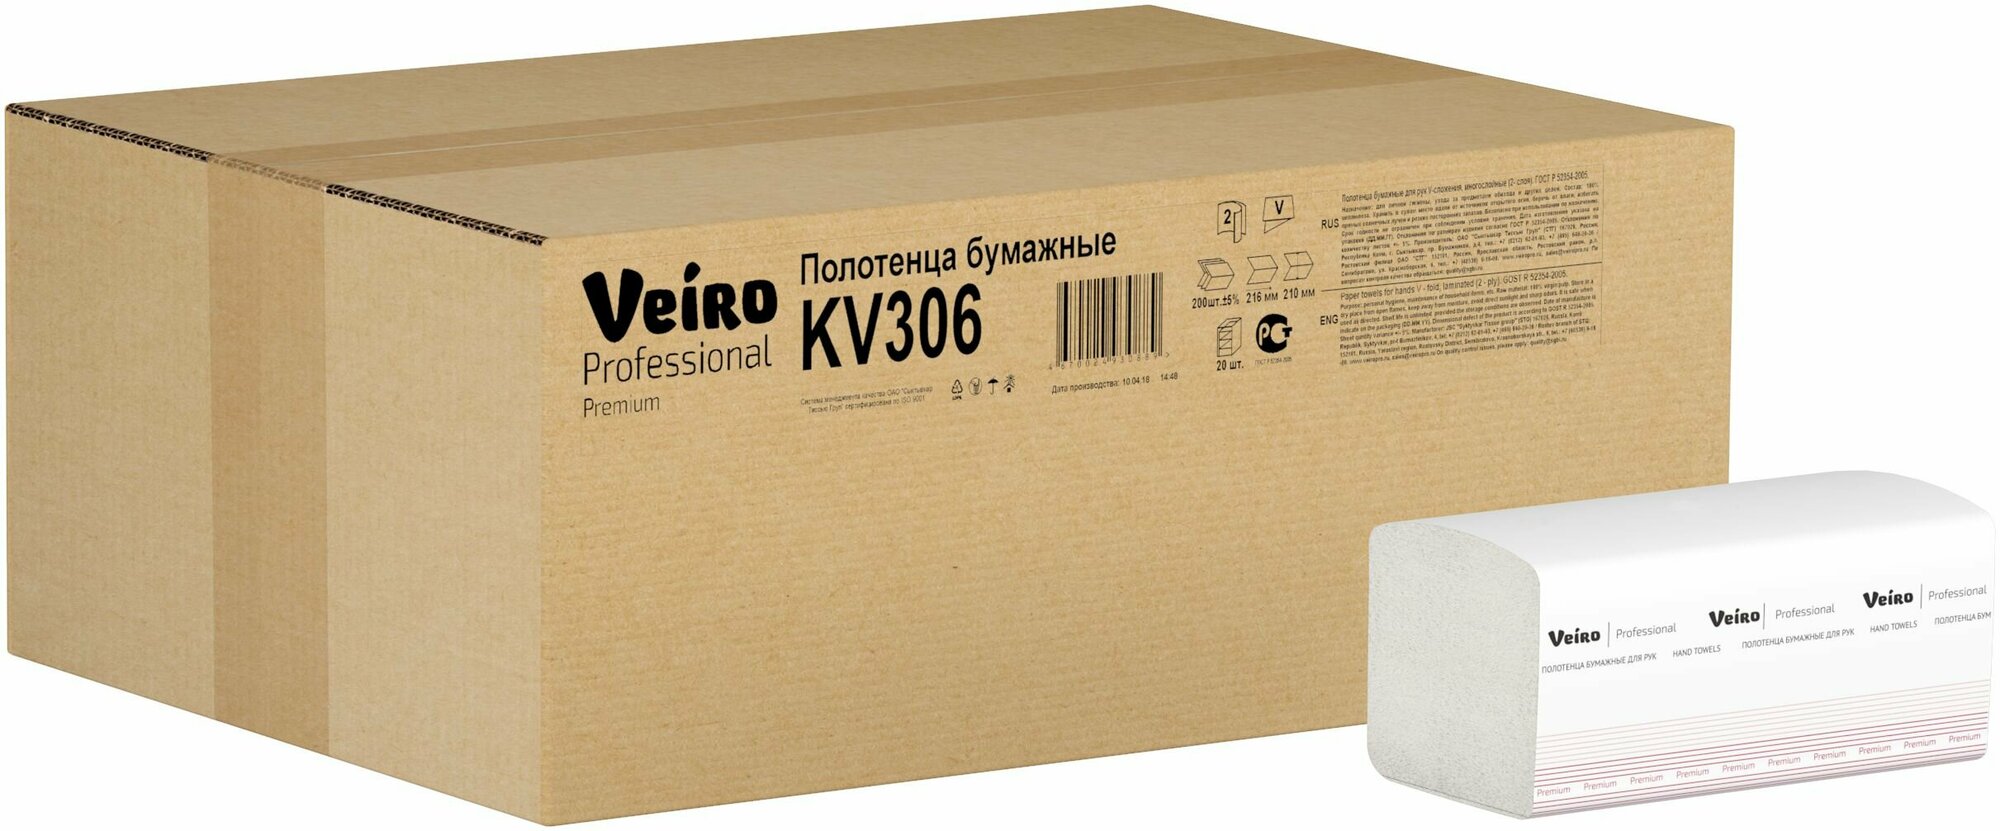 Полотенца бумажные Veiro Professional Premium KV306, V-сложение, 20 пачек по 200 листов, белые, 21*21.6 см